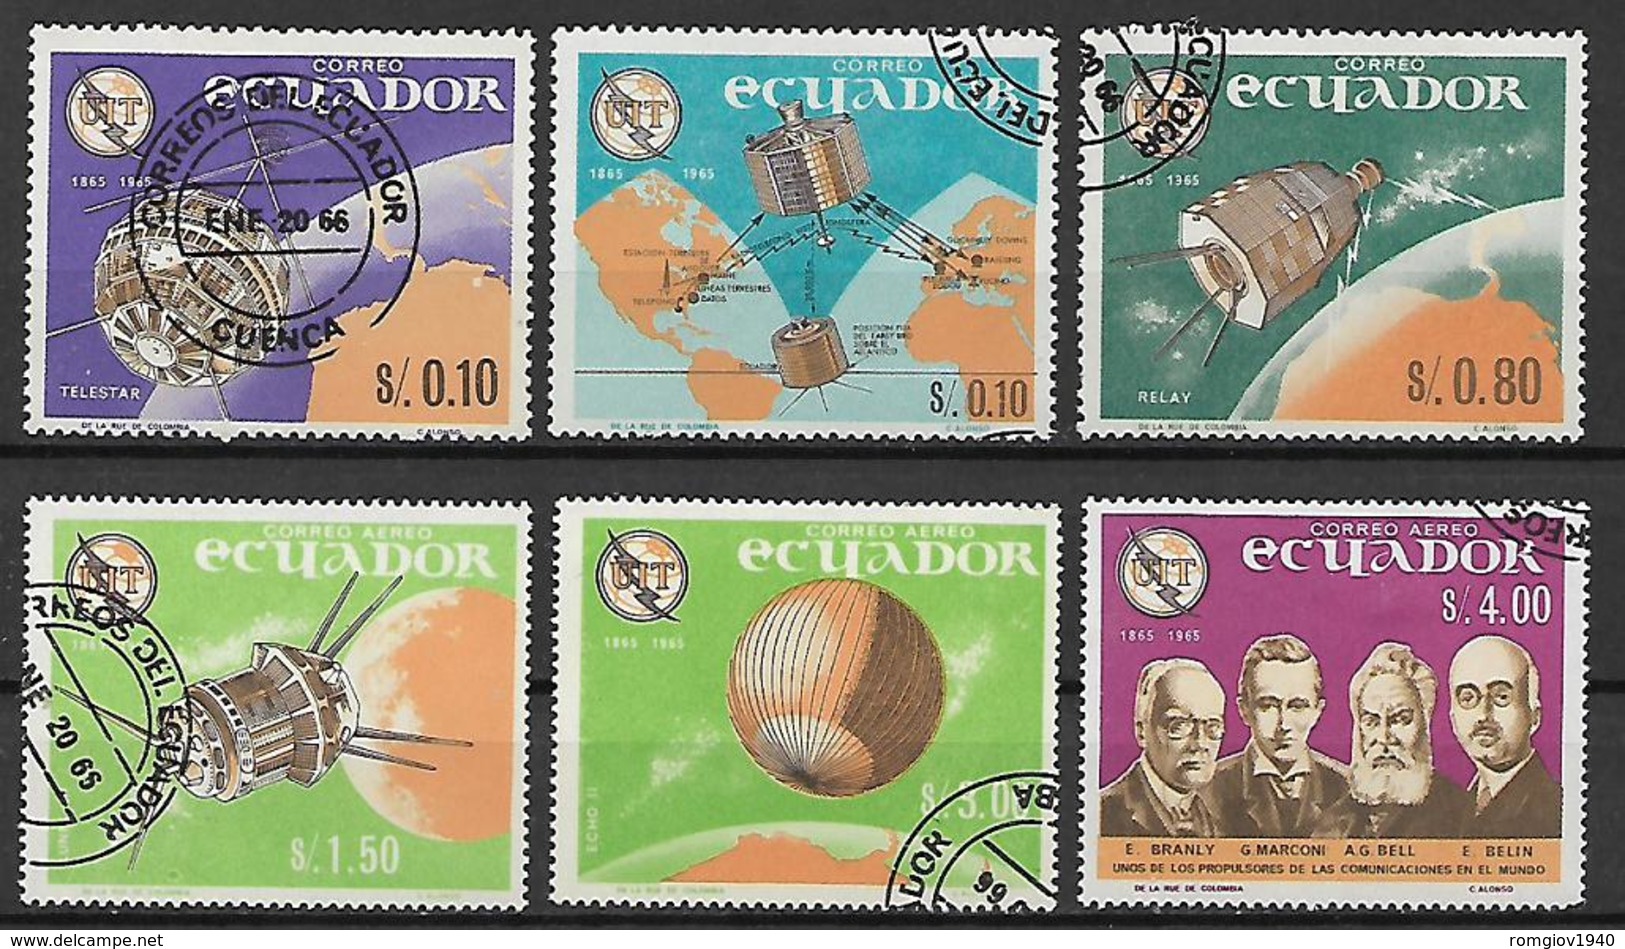 ECUADOR 1966 UNIONE INTERNAZIONALE DI TELECOMUNICAZIONI YVERT. 752-754 + POSTA AEREA 450-452 USATA VF - Ecuador